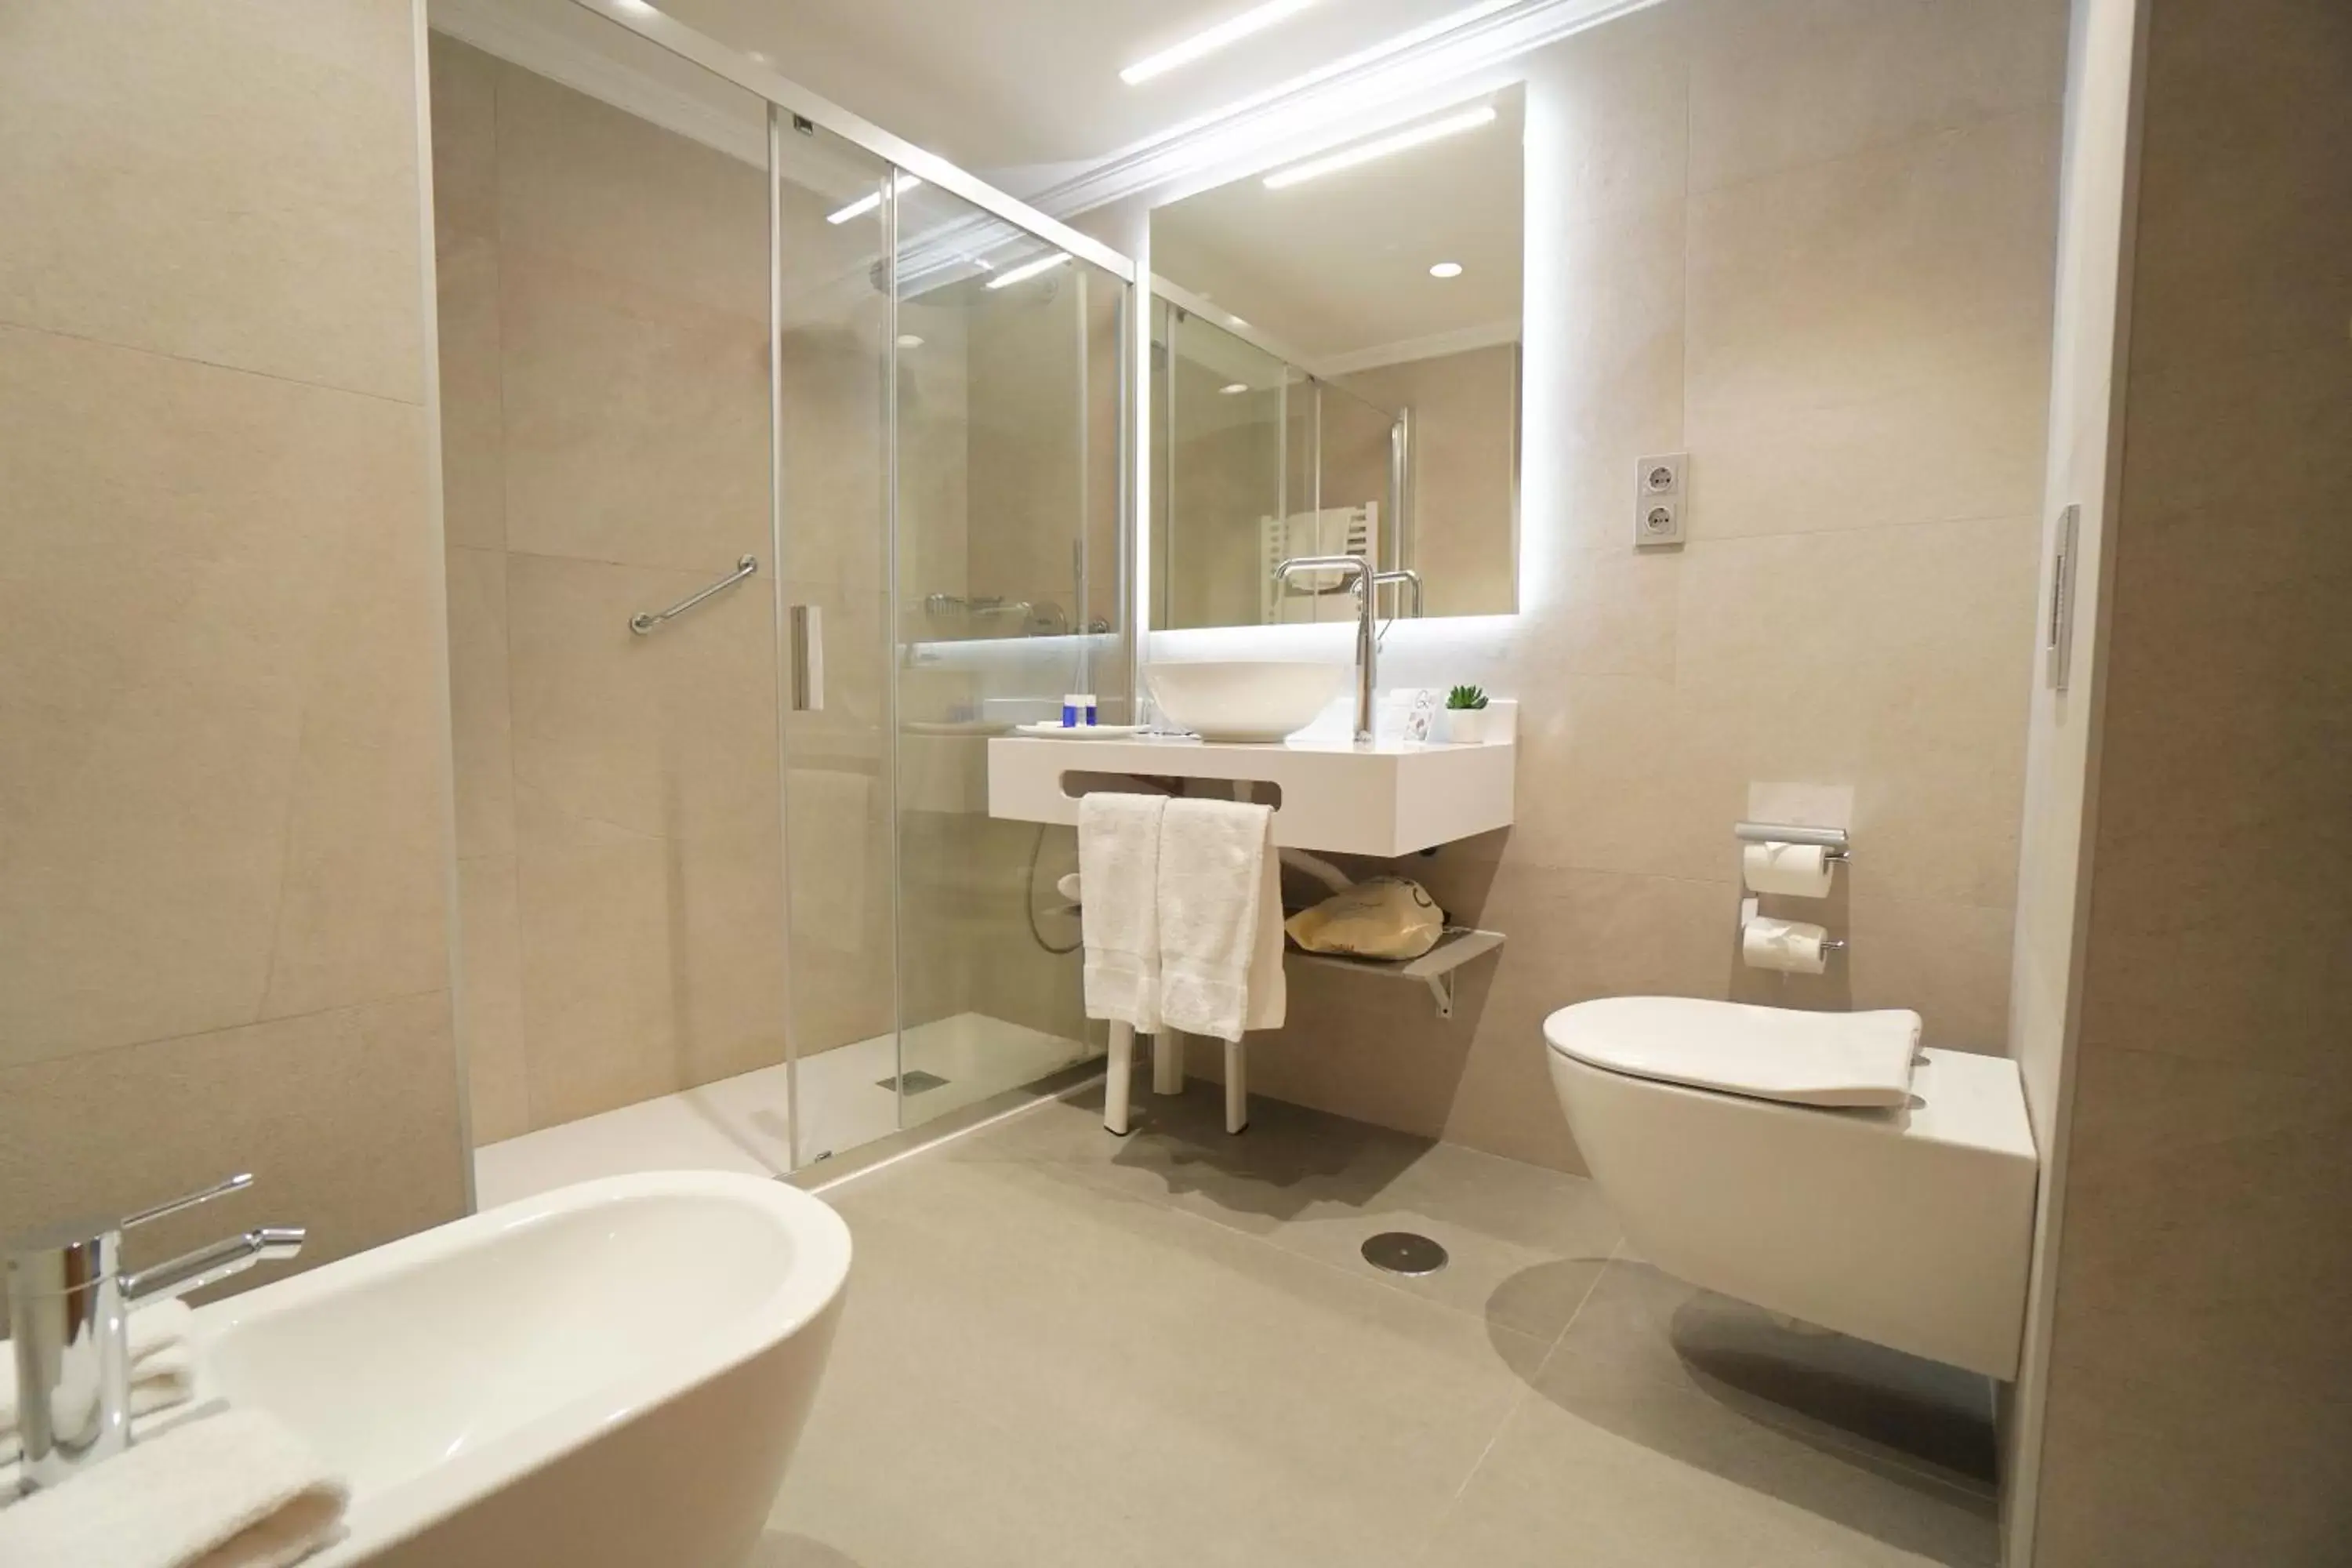 Property building, Bathroom in Aparto-Hotel Rosales